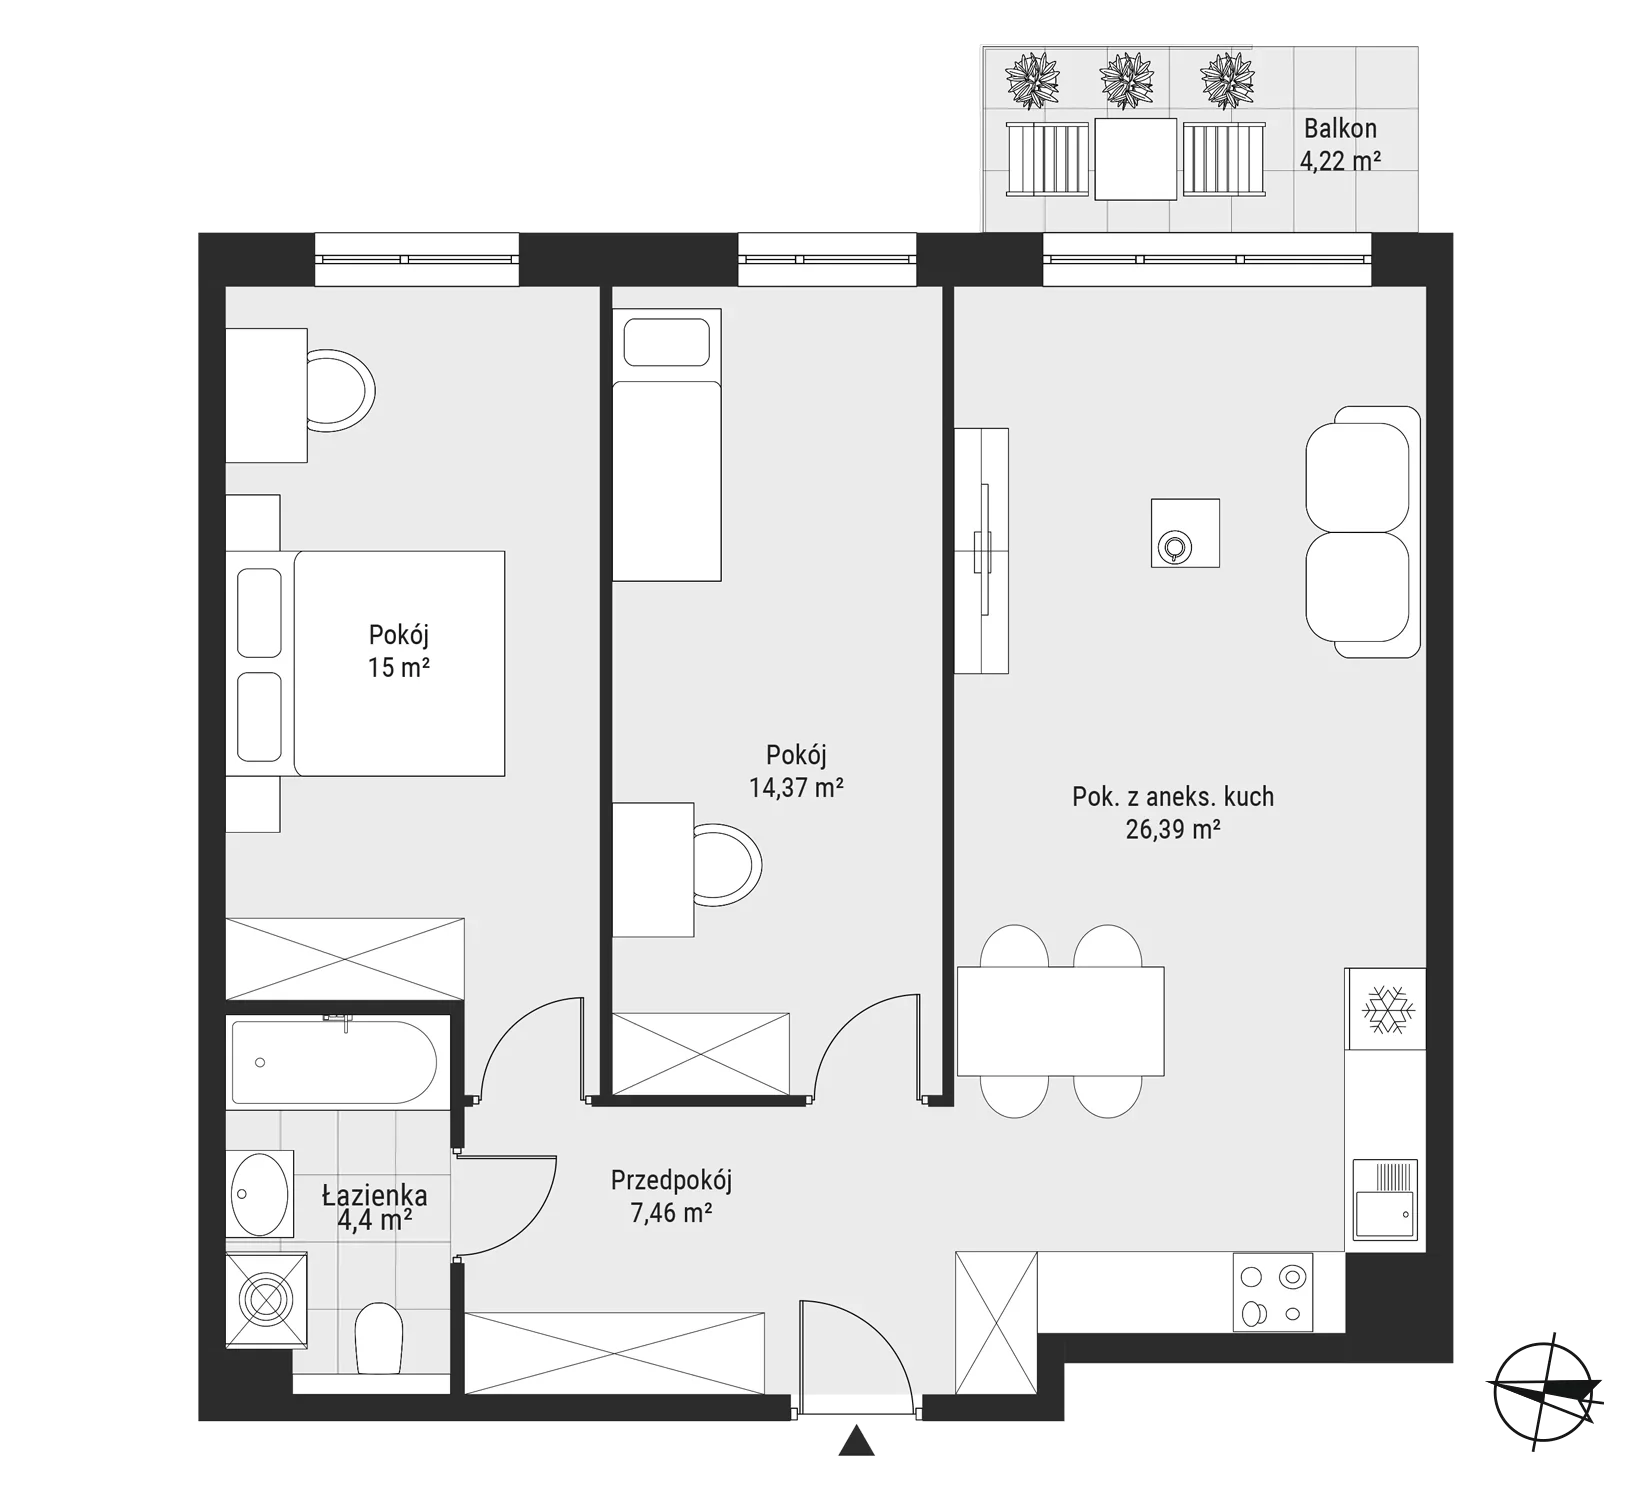 Mieszkanie 67,62 m², piętro 3, oferta nr mieszkanie 36, Bytkowska 3.0, Katowice, Wełnowiec-Józefowiec, ul. Bytkowska